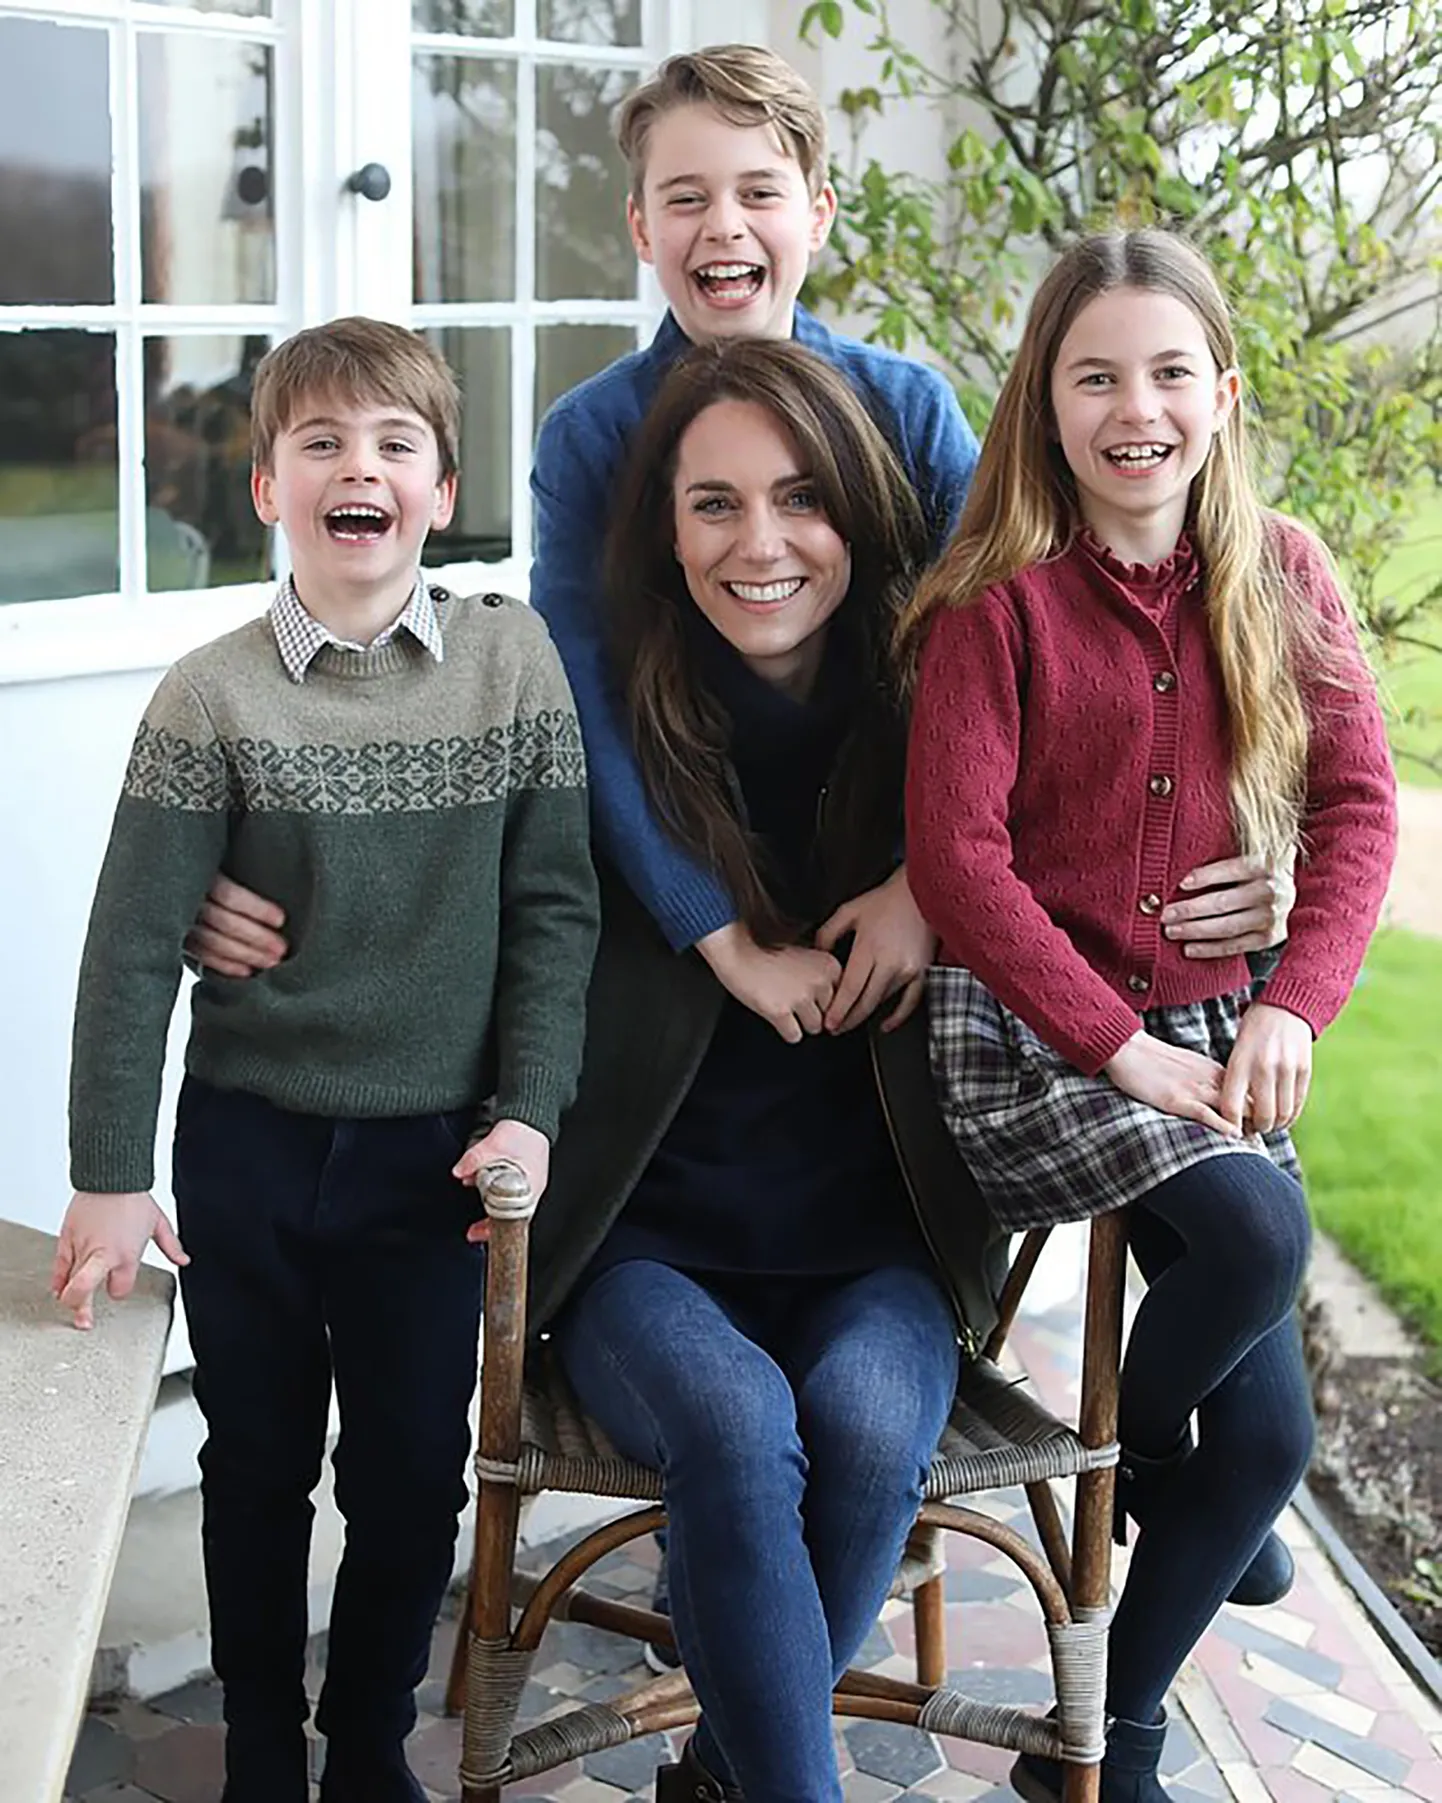 KAS MANIPULATSIOON? Kuningakoja pressiteenistuse poolt meediasse saadetud foto Kate Middletonist ja lastest. Eksperdid avastasid sellel digitaalse töötluse jälgi.